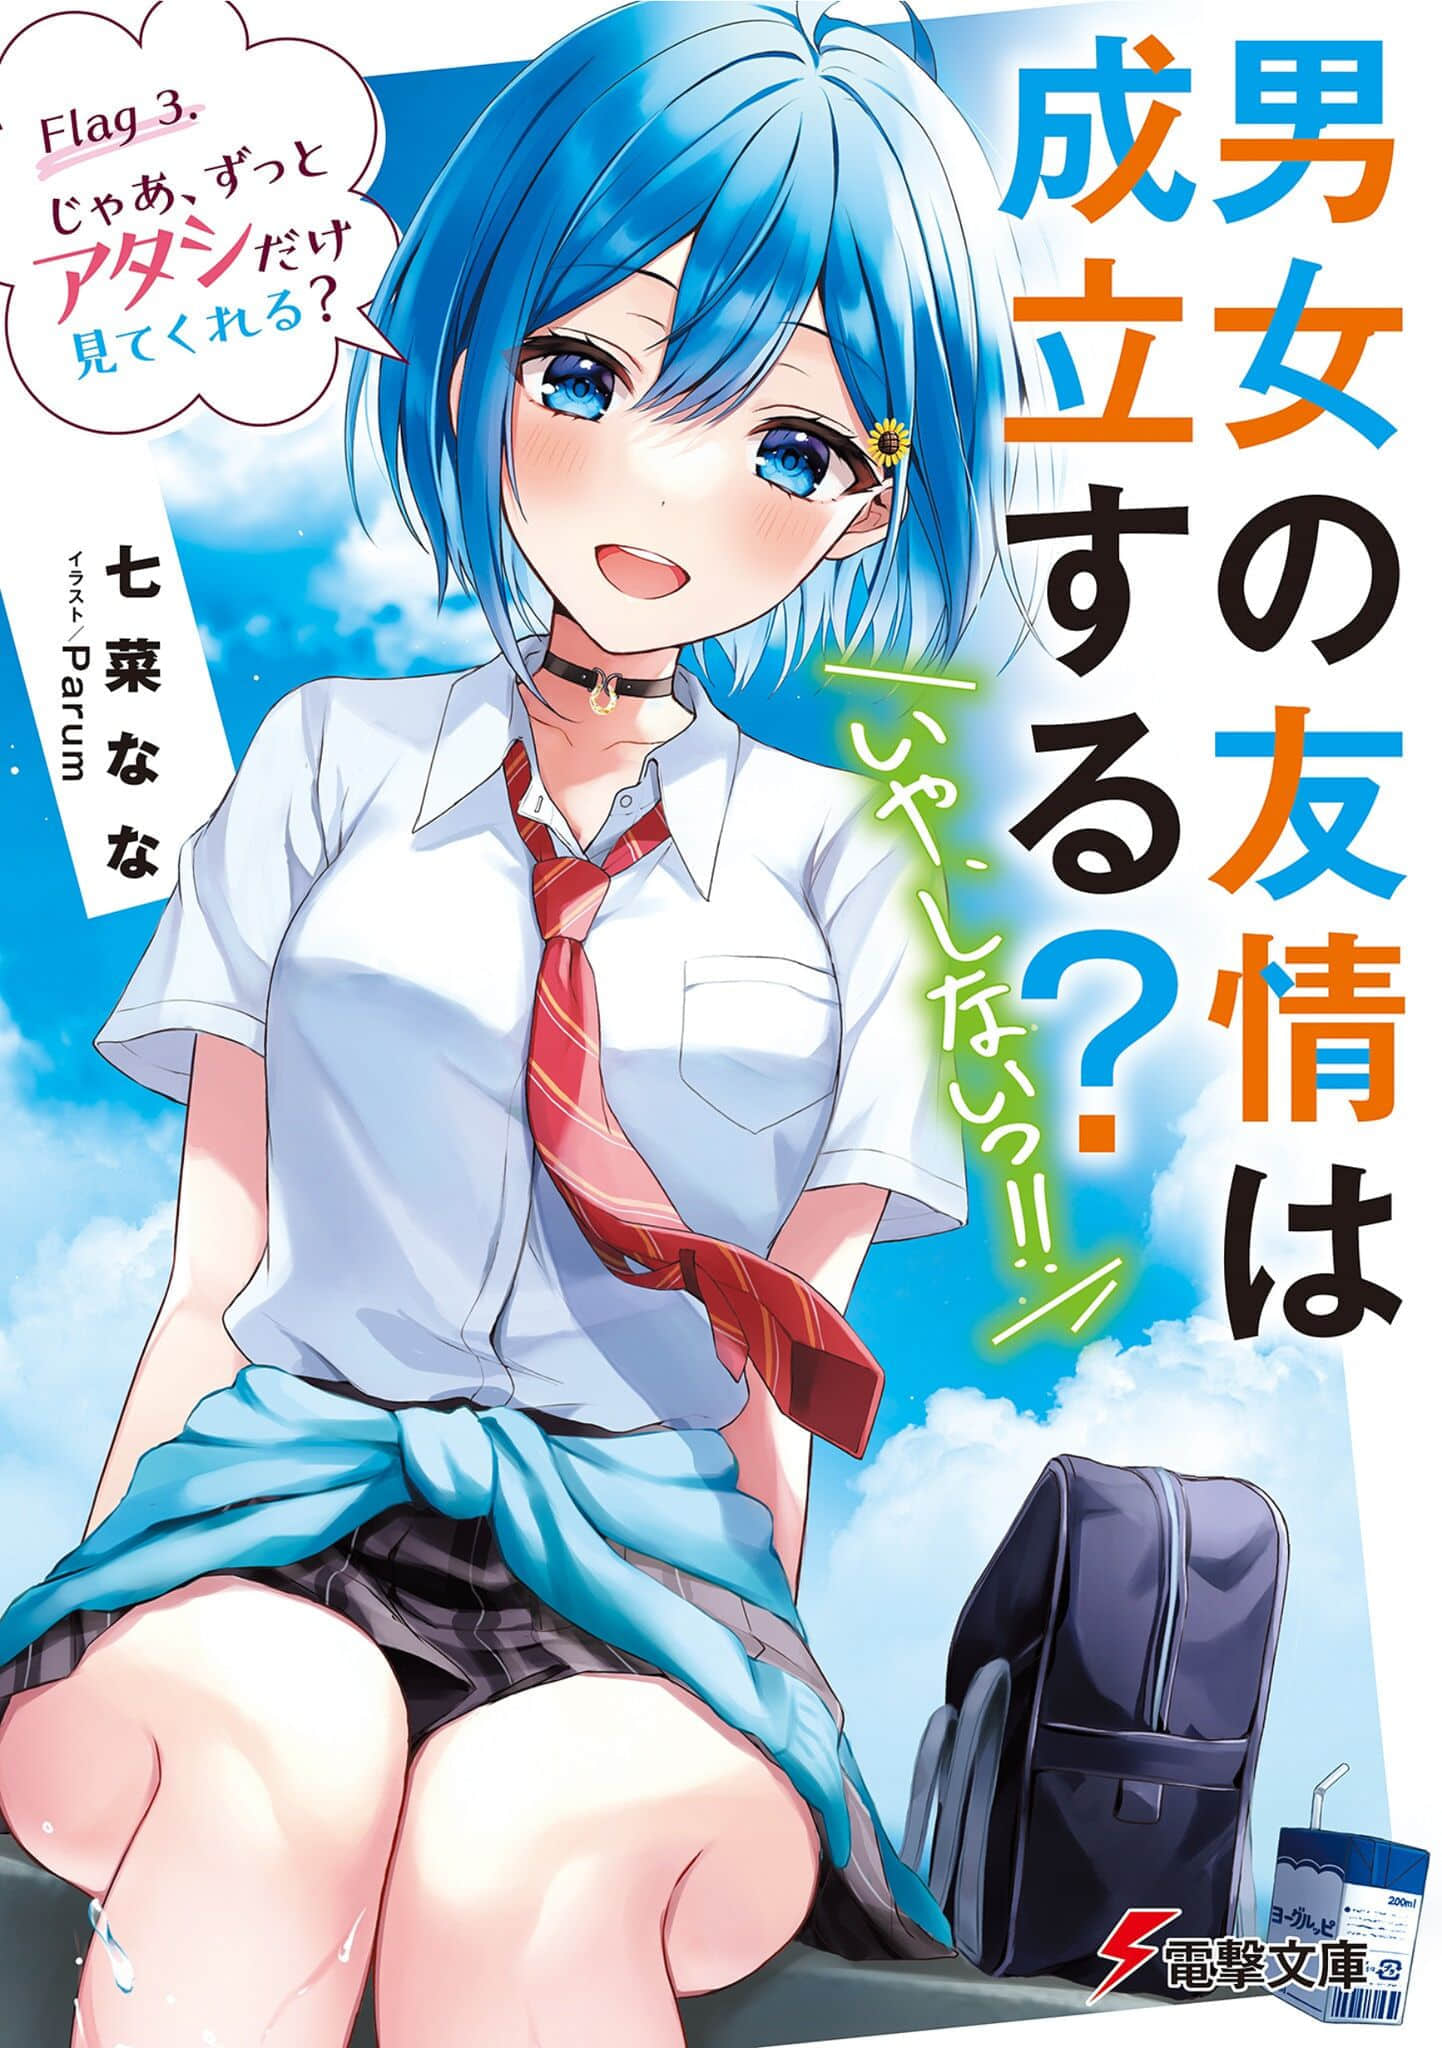 Light Novel Volume 3 | Danjo no Yuujou wa Seiritsu Suru? (Iya